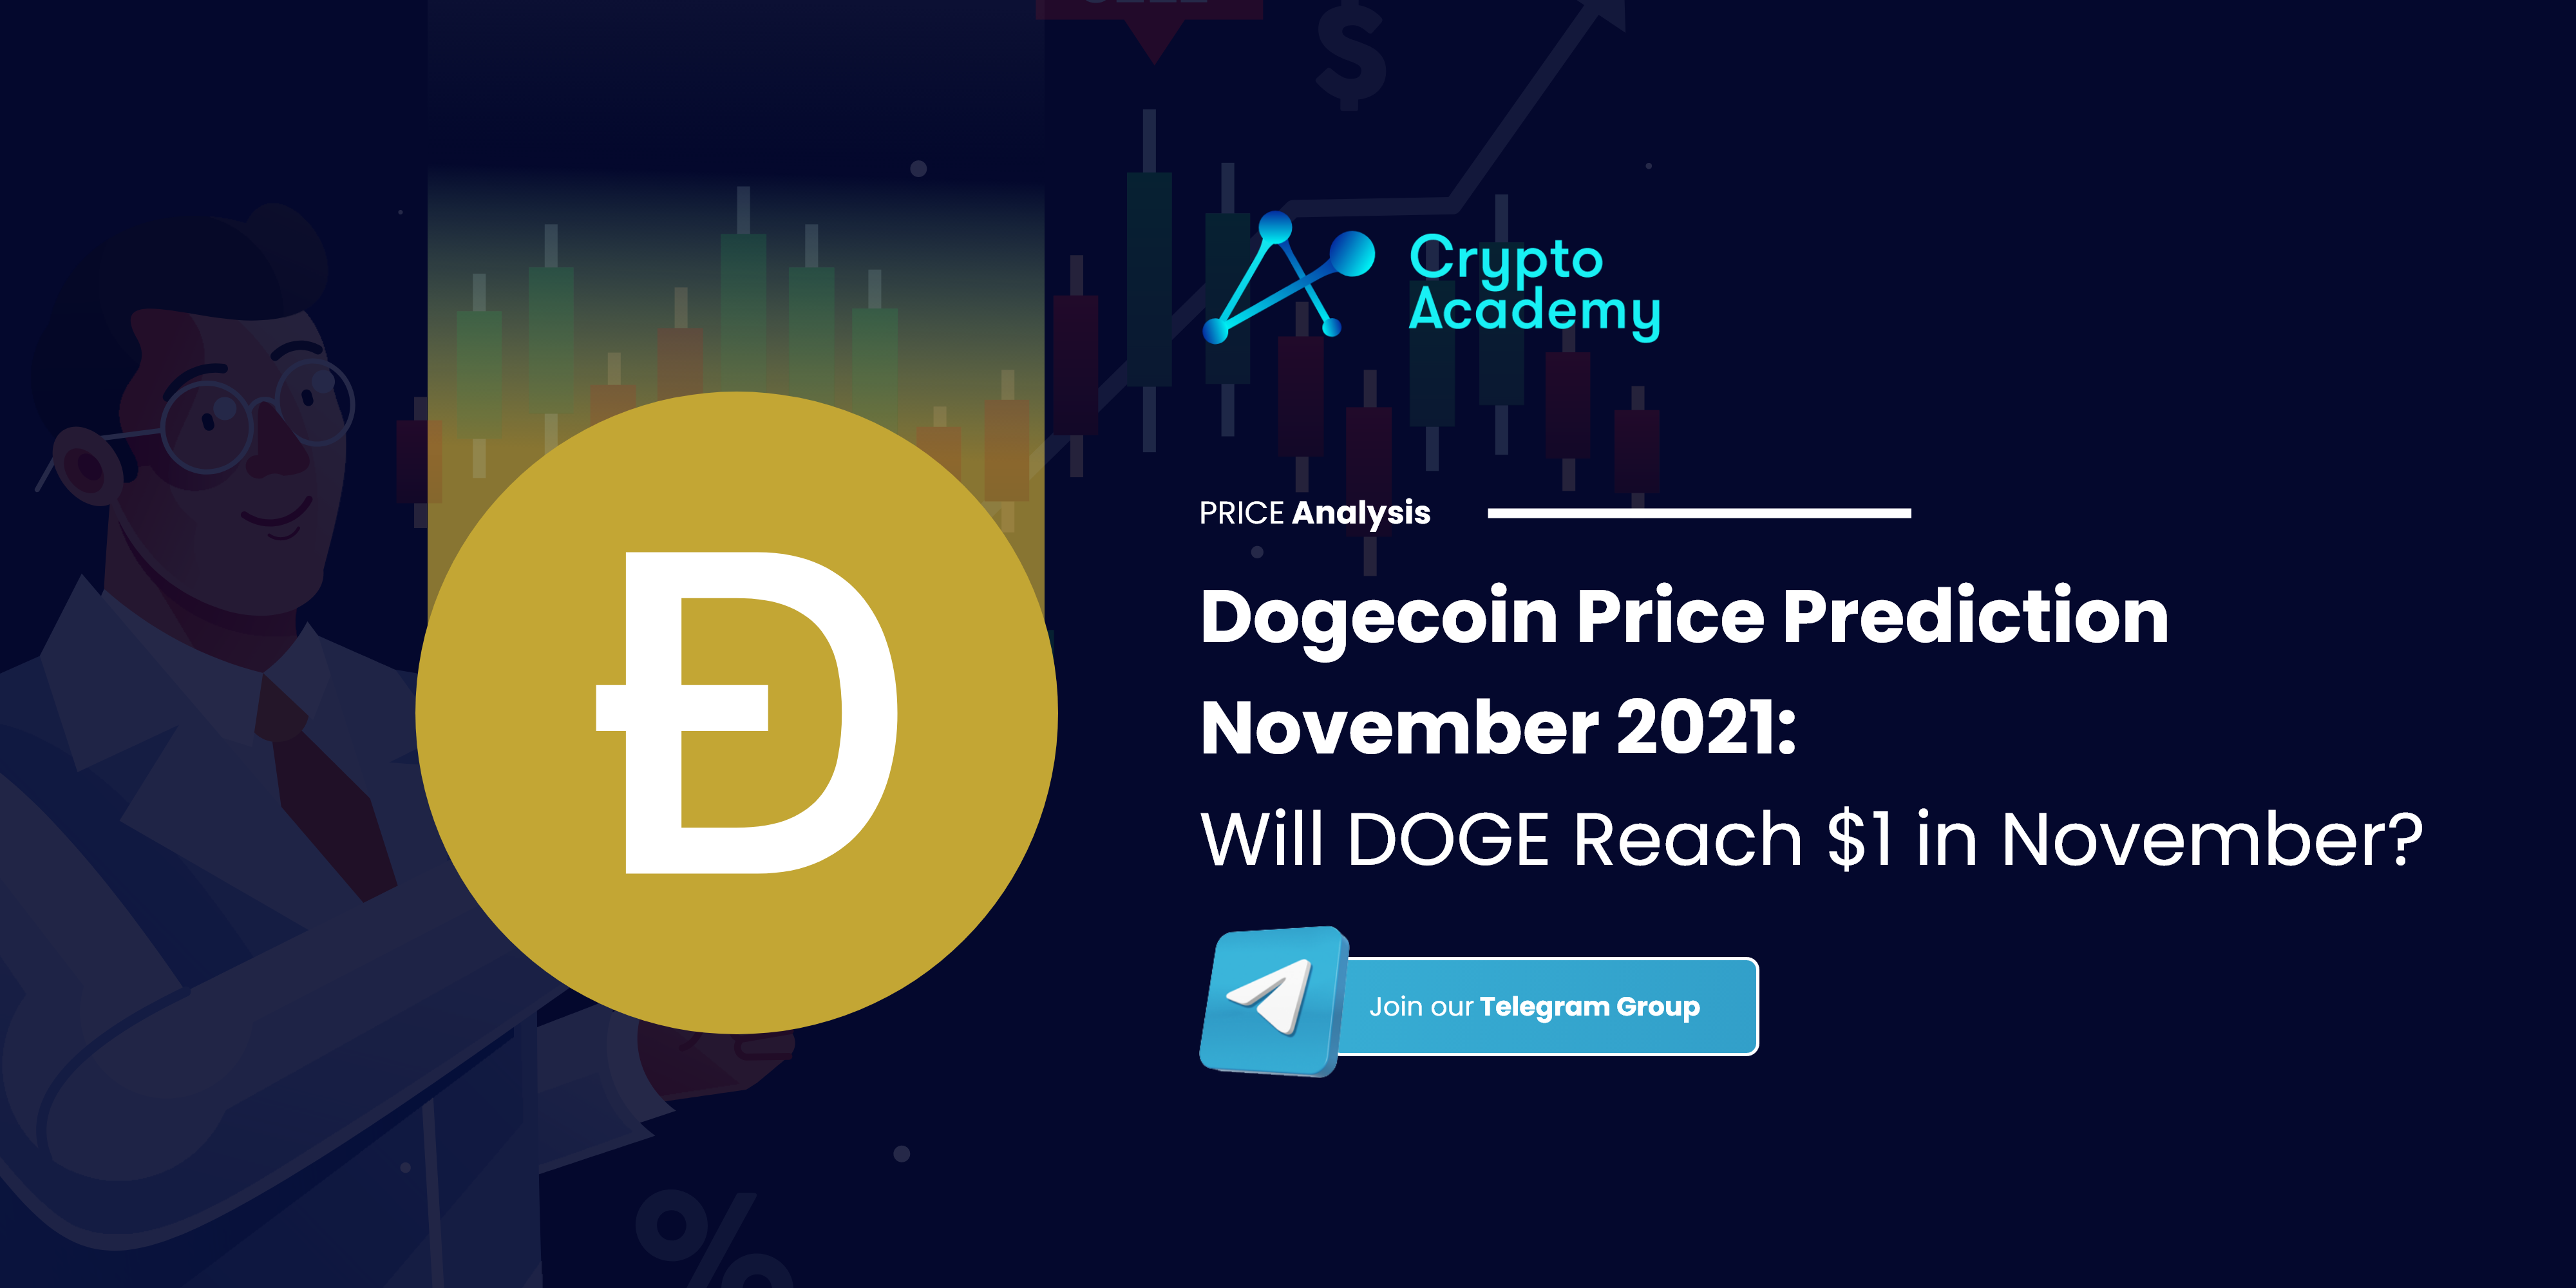 Dogecoin Price Prediction November 2021: Will DOGE Reach $1 in November?